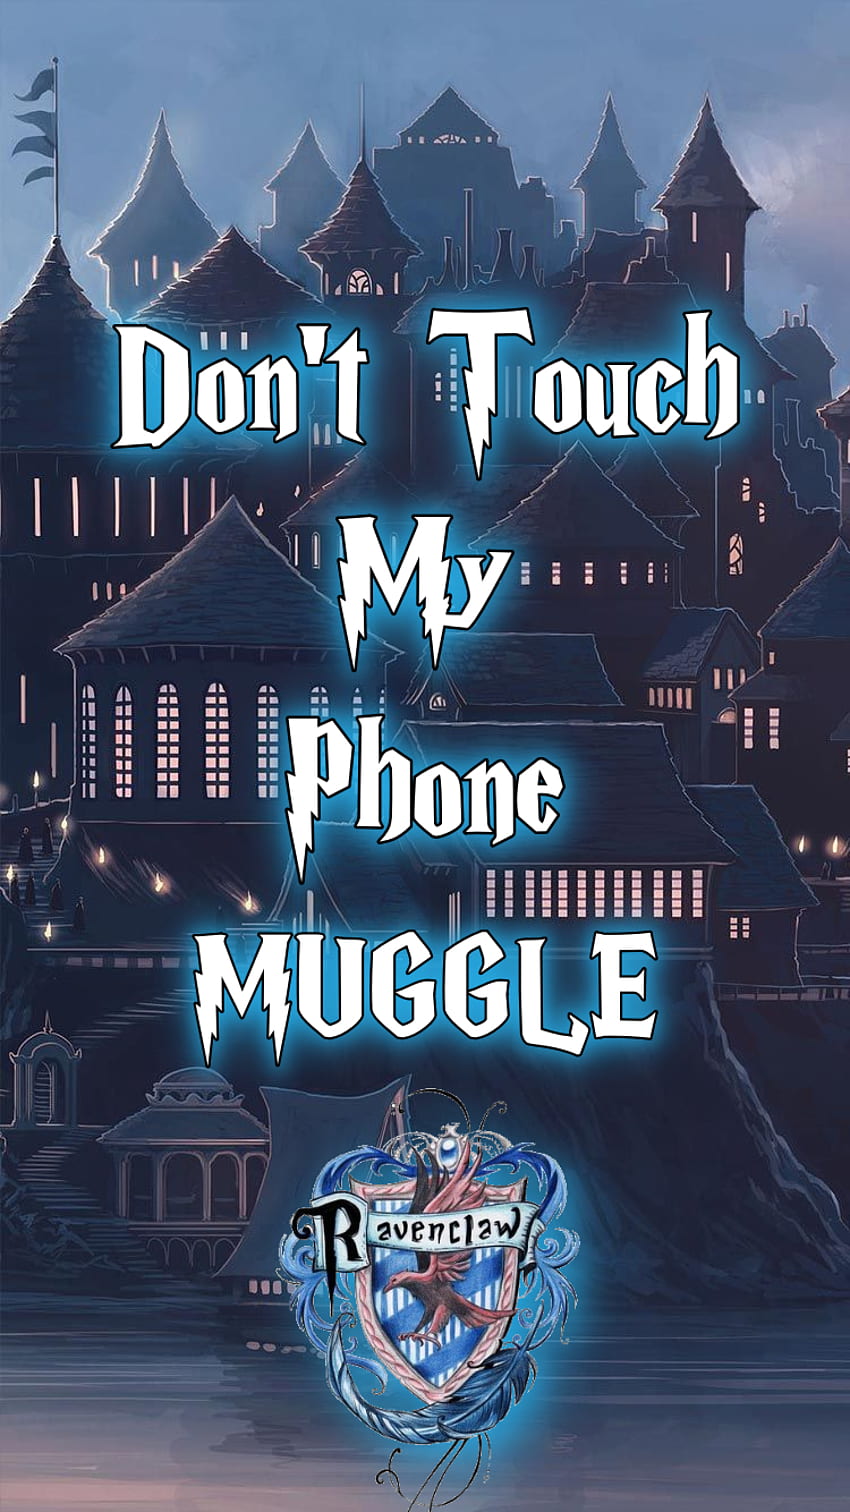 Don't Touch My Phone Muggle iPhone için Ravenclaw ekran resmi ...